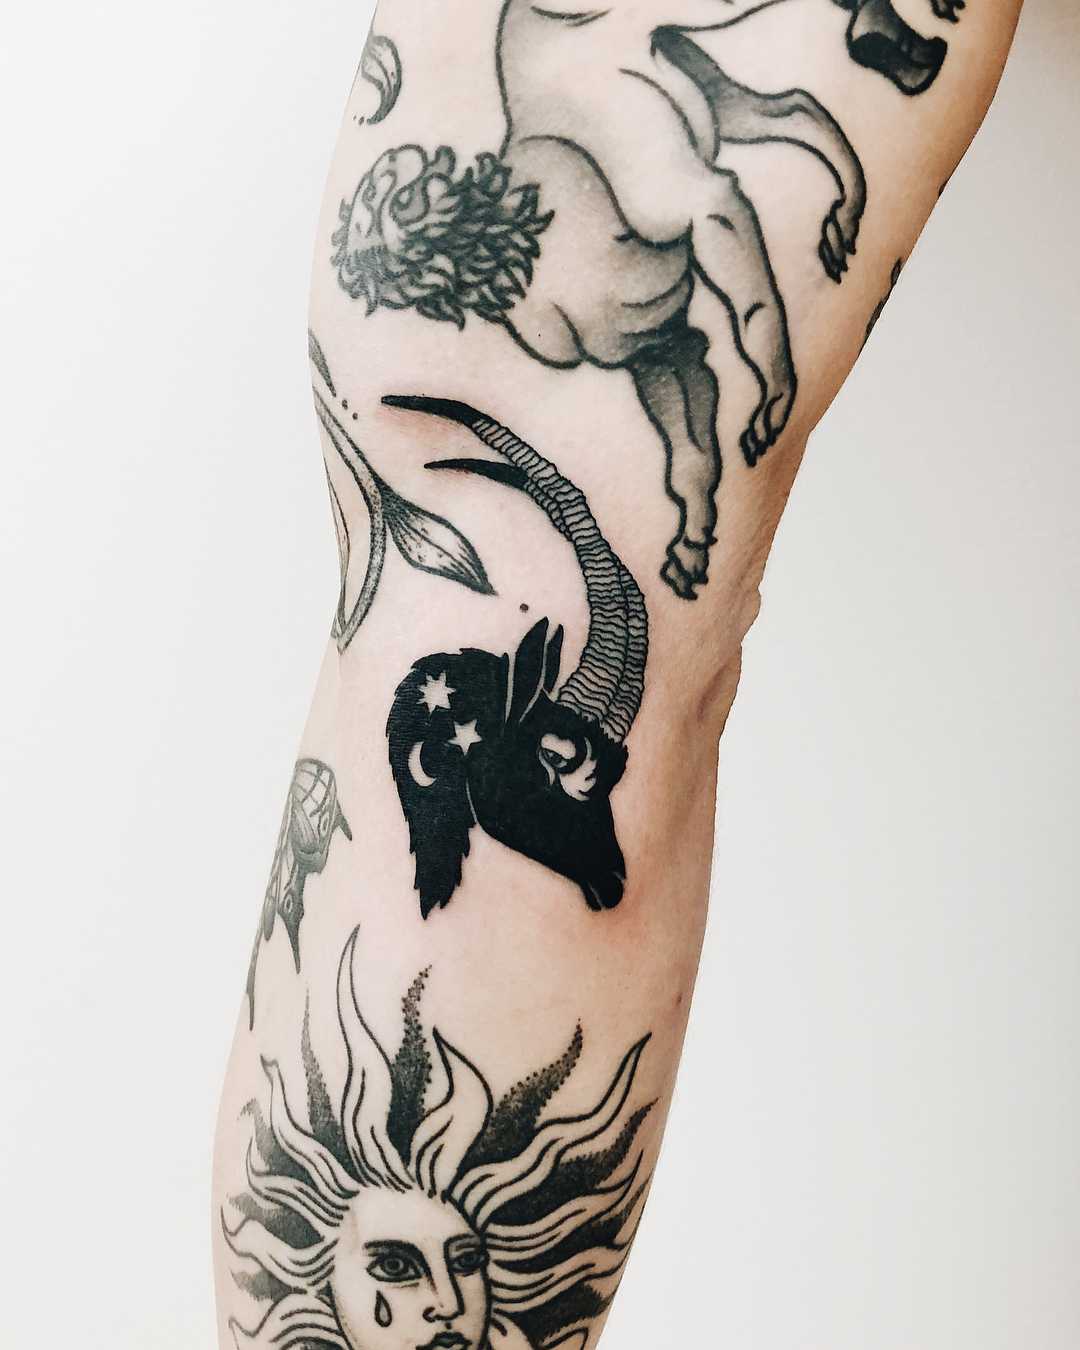 Starry ram tattoo by Finley Jordan